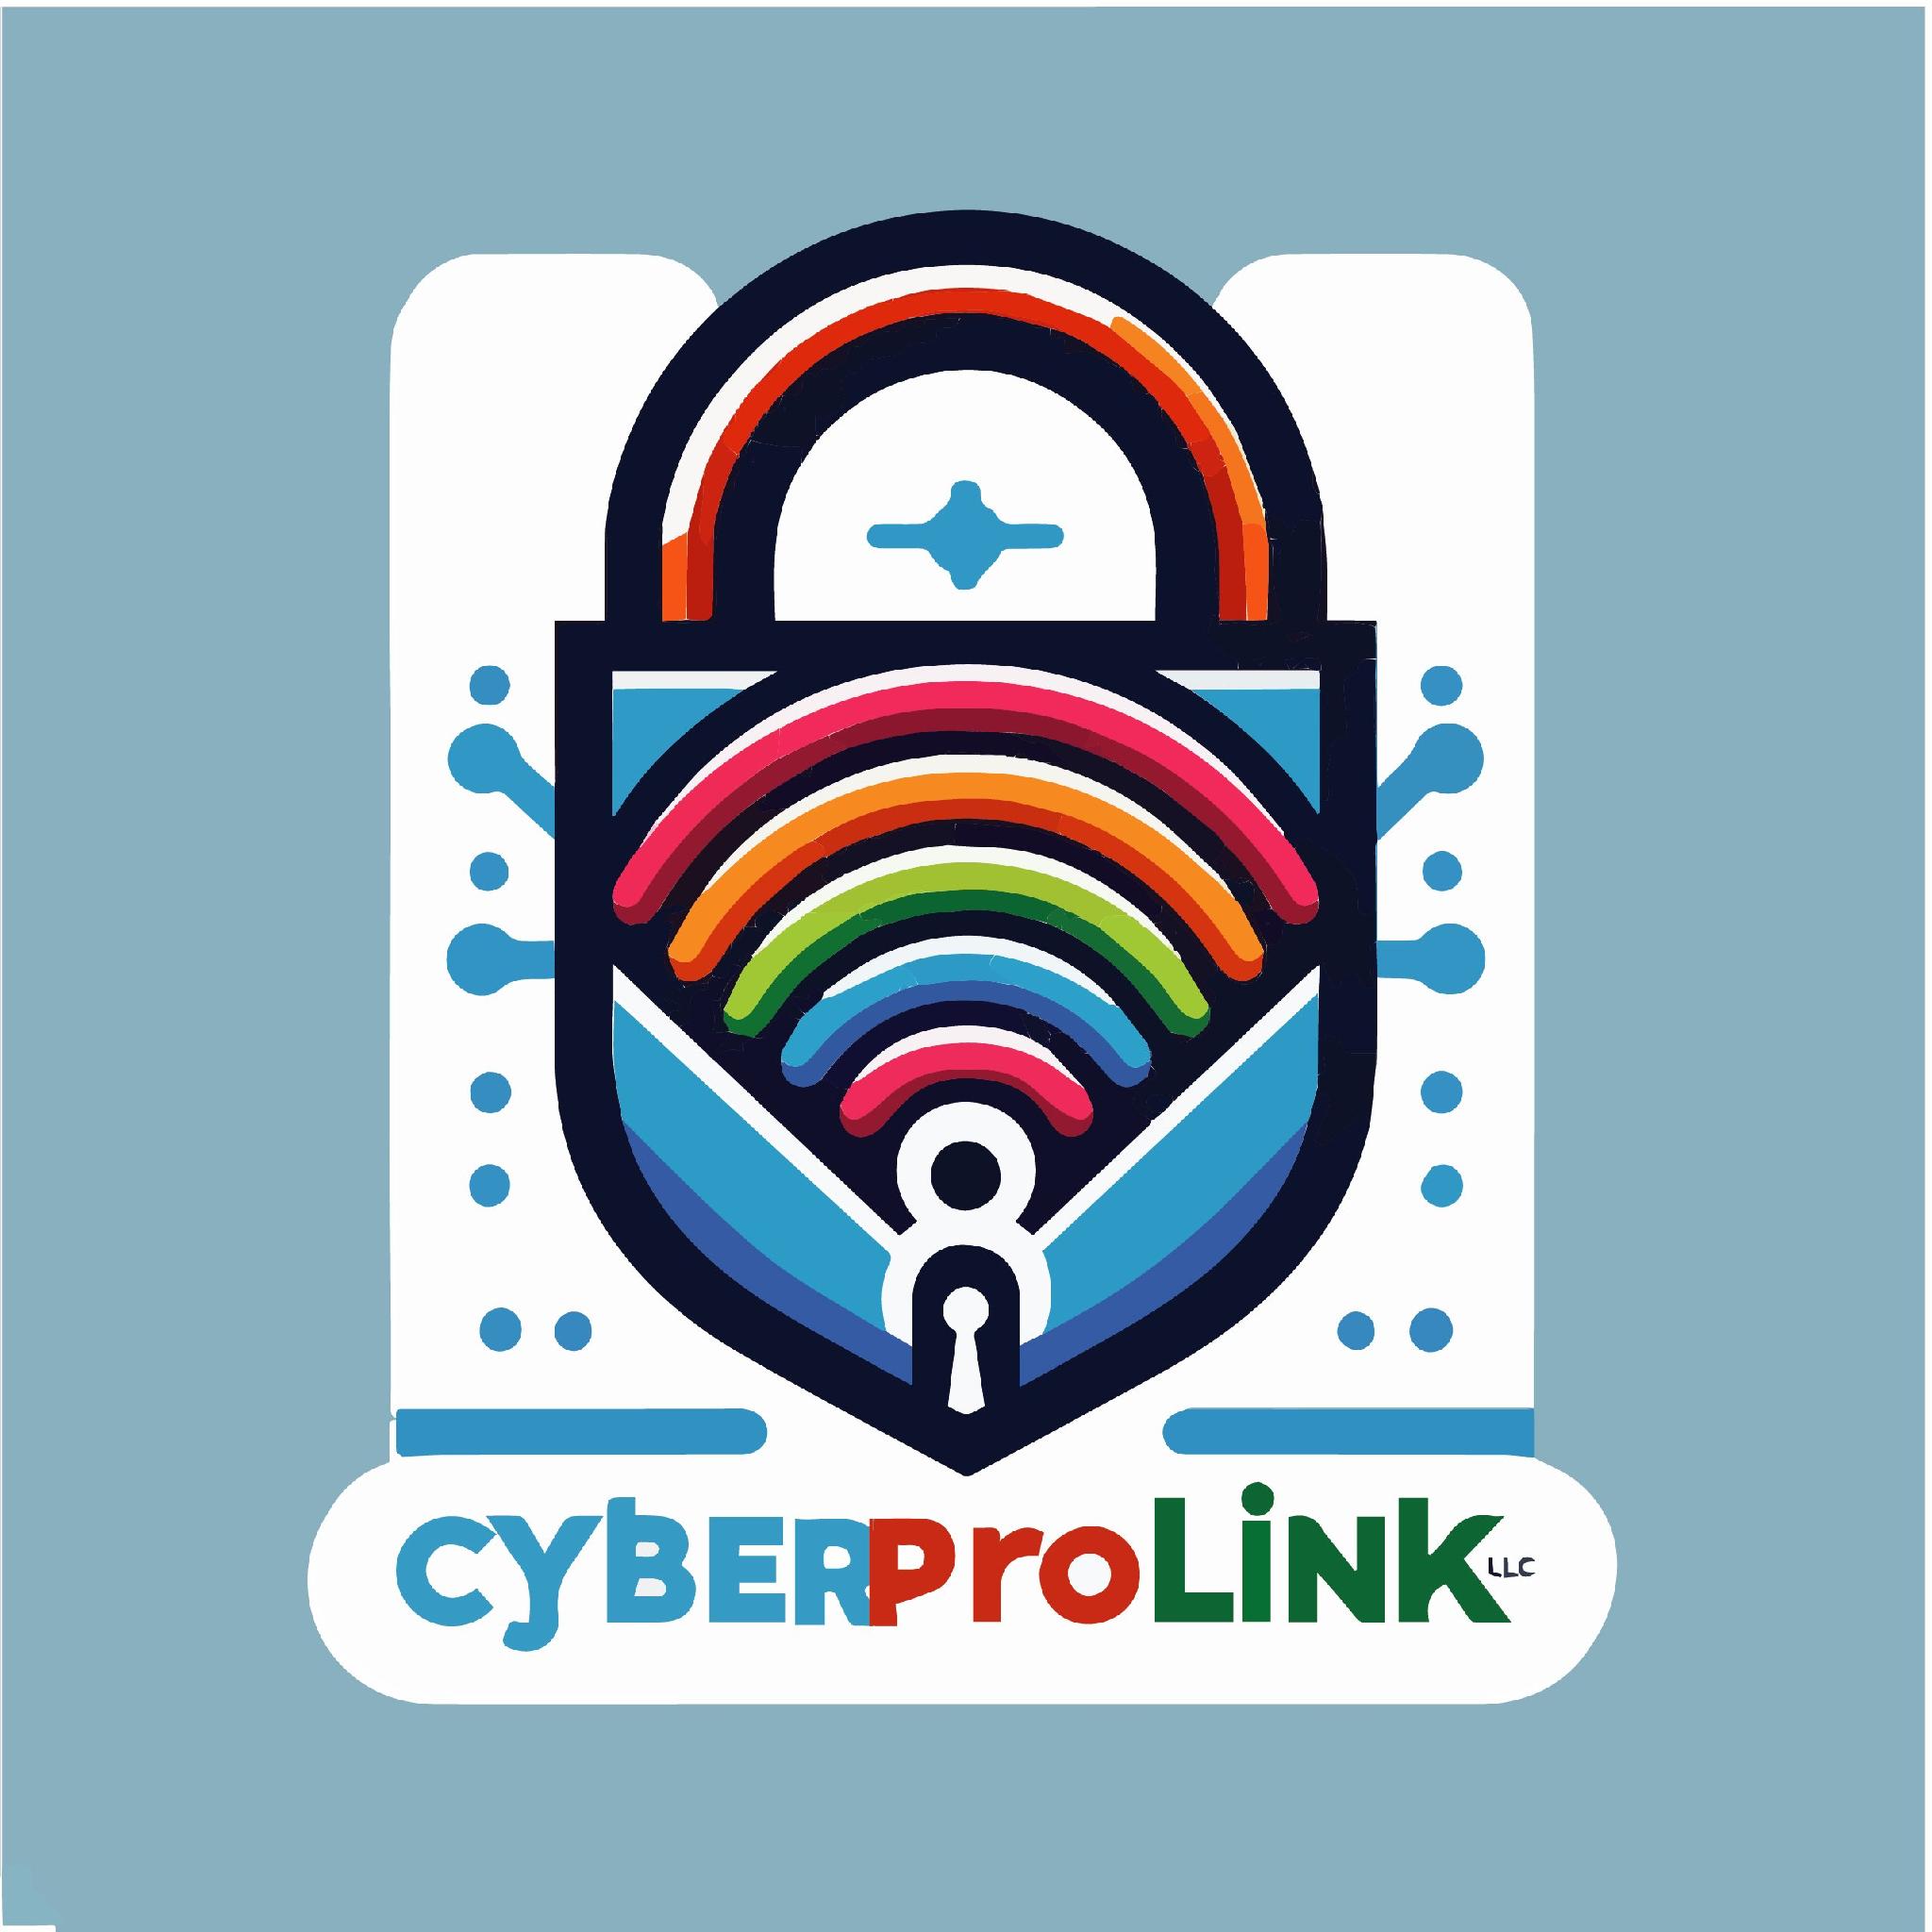 CyberproLink